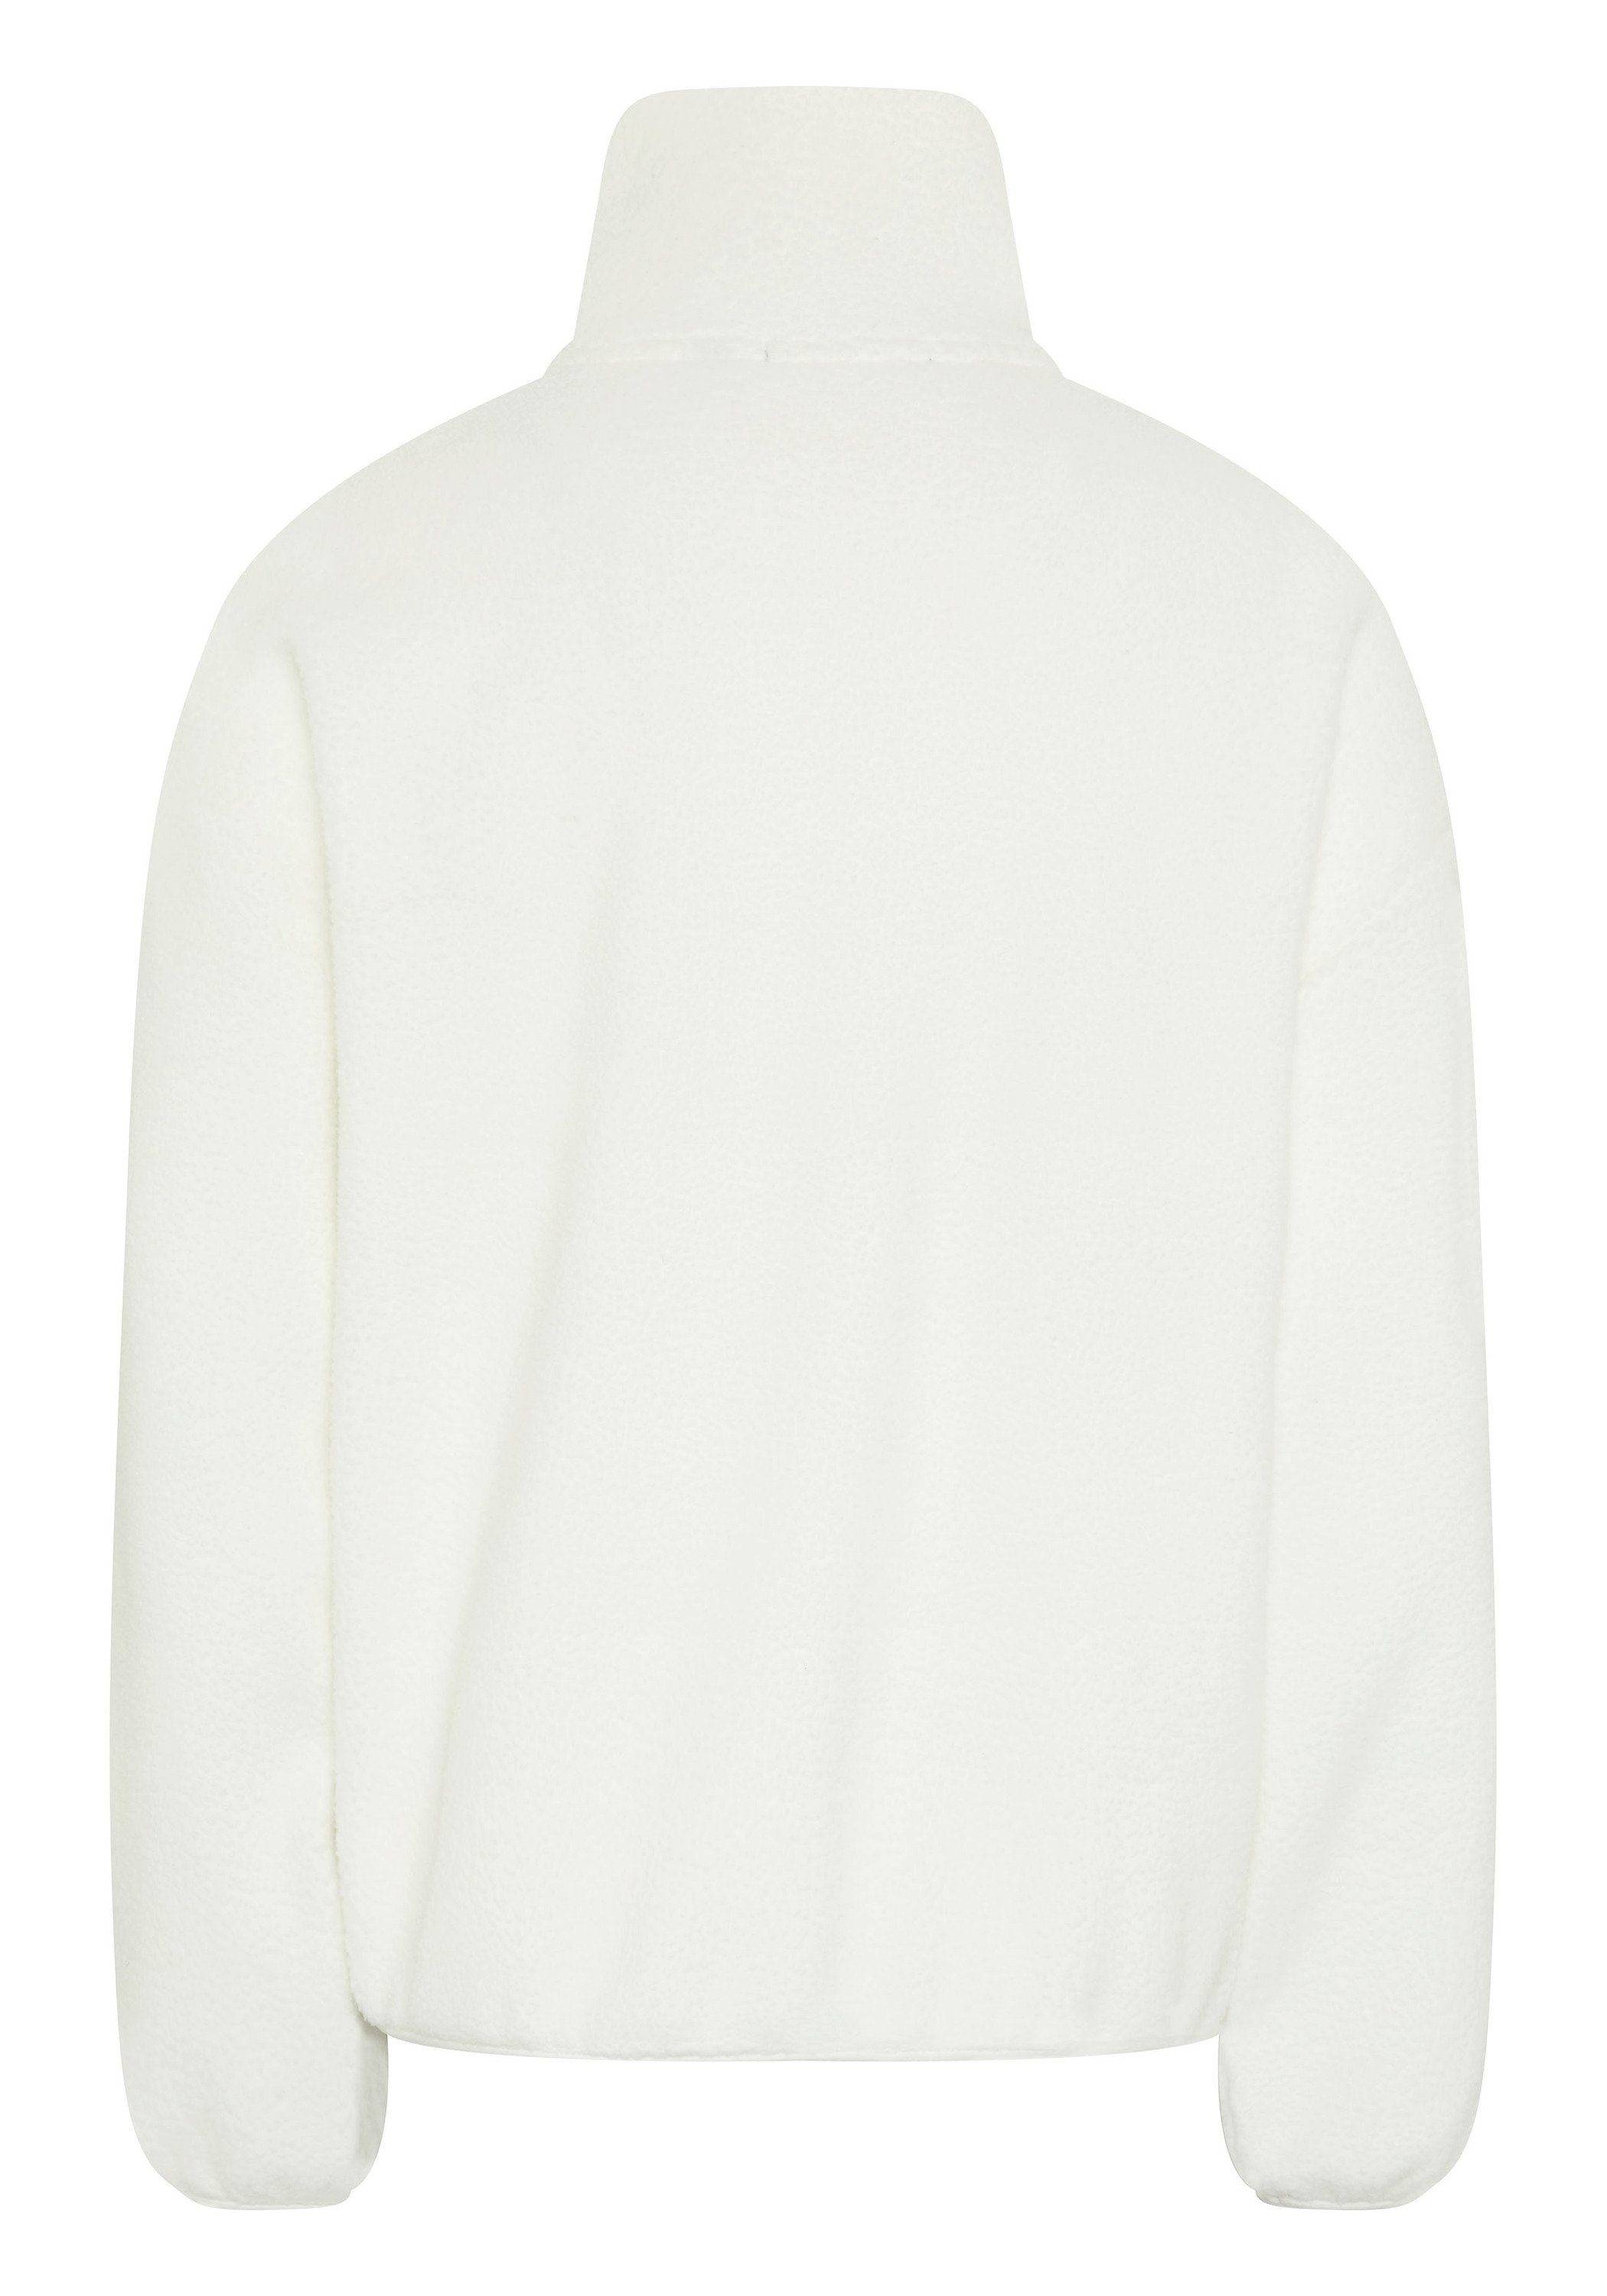 1 Fleece-Pullover Star White Fleecepullover 11-4202 Label-Stitching mit Chiemsee